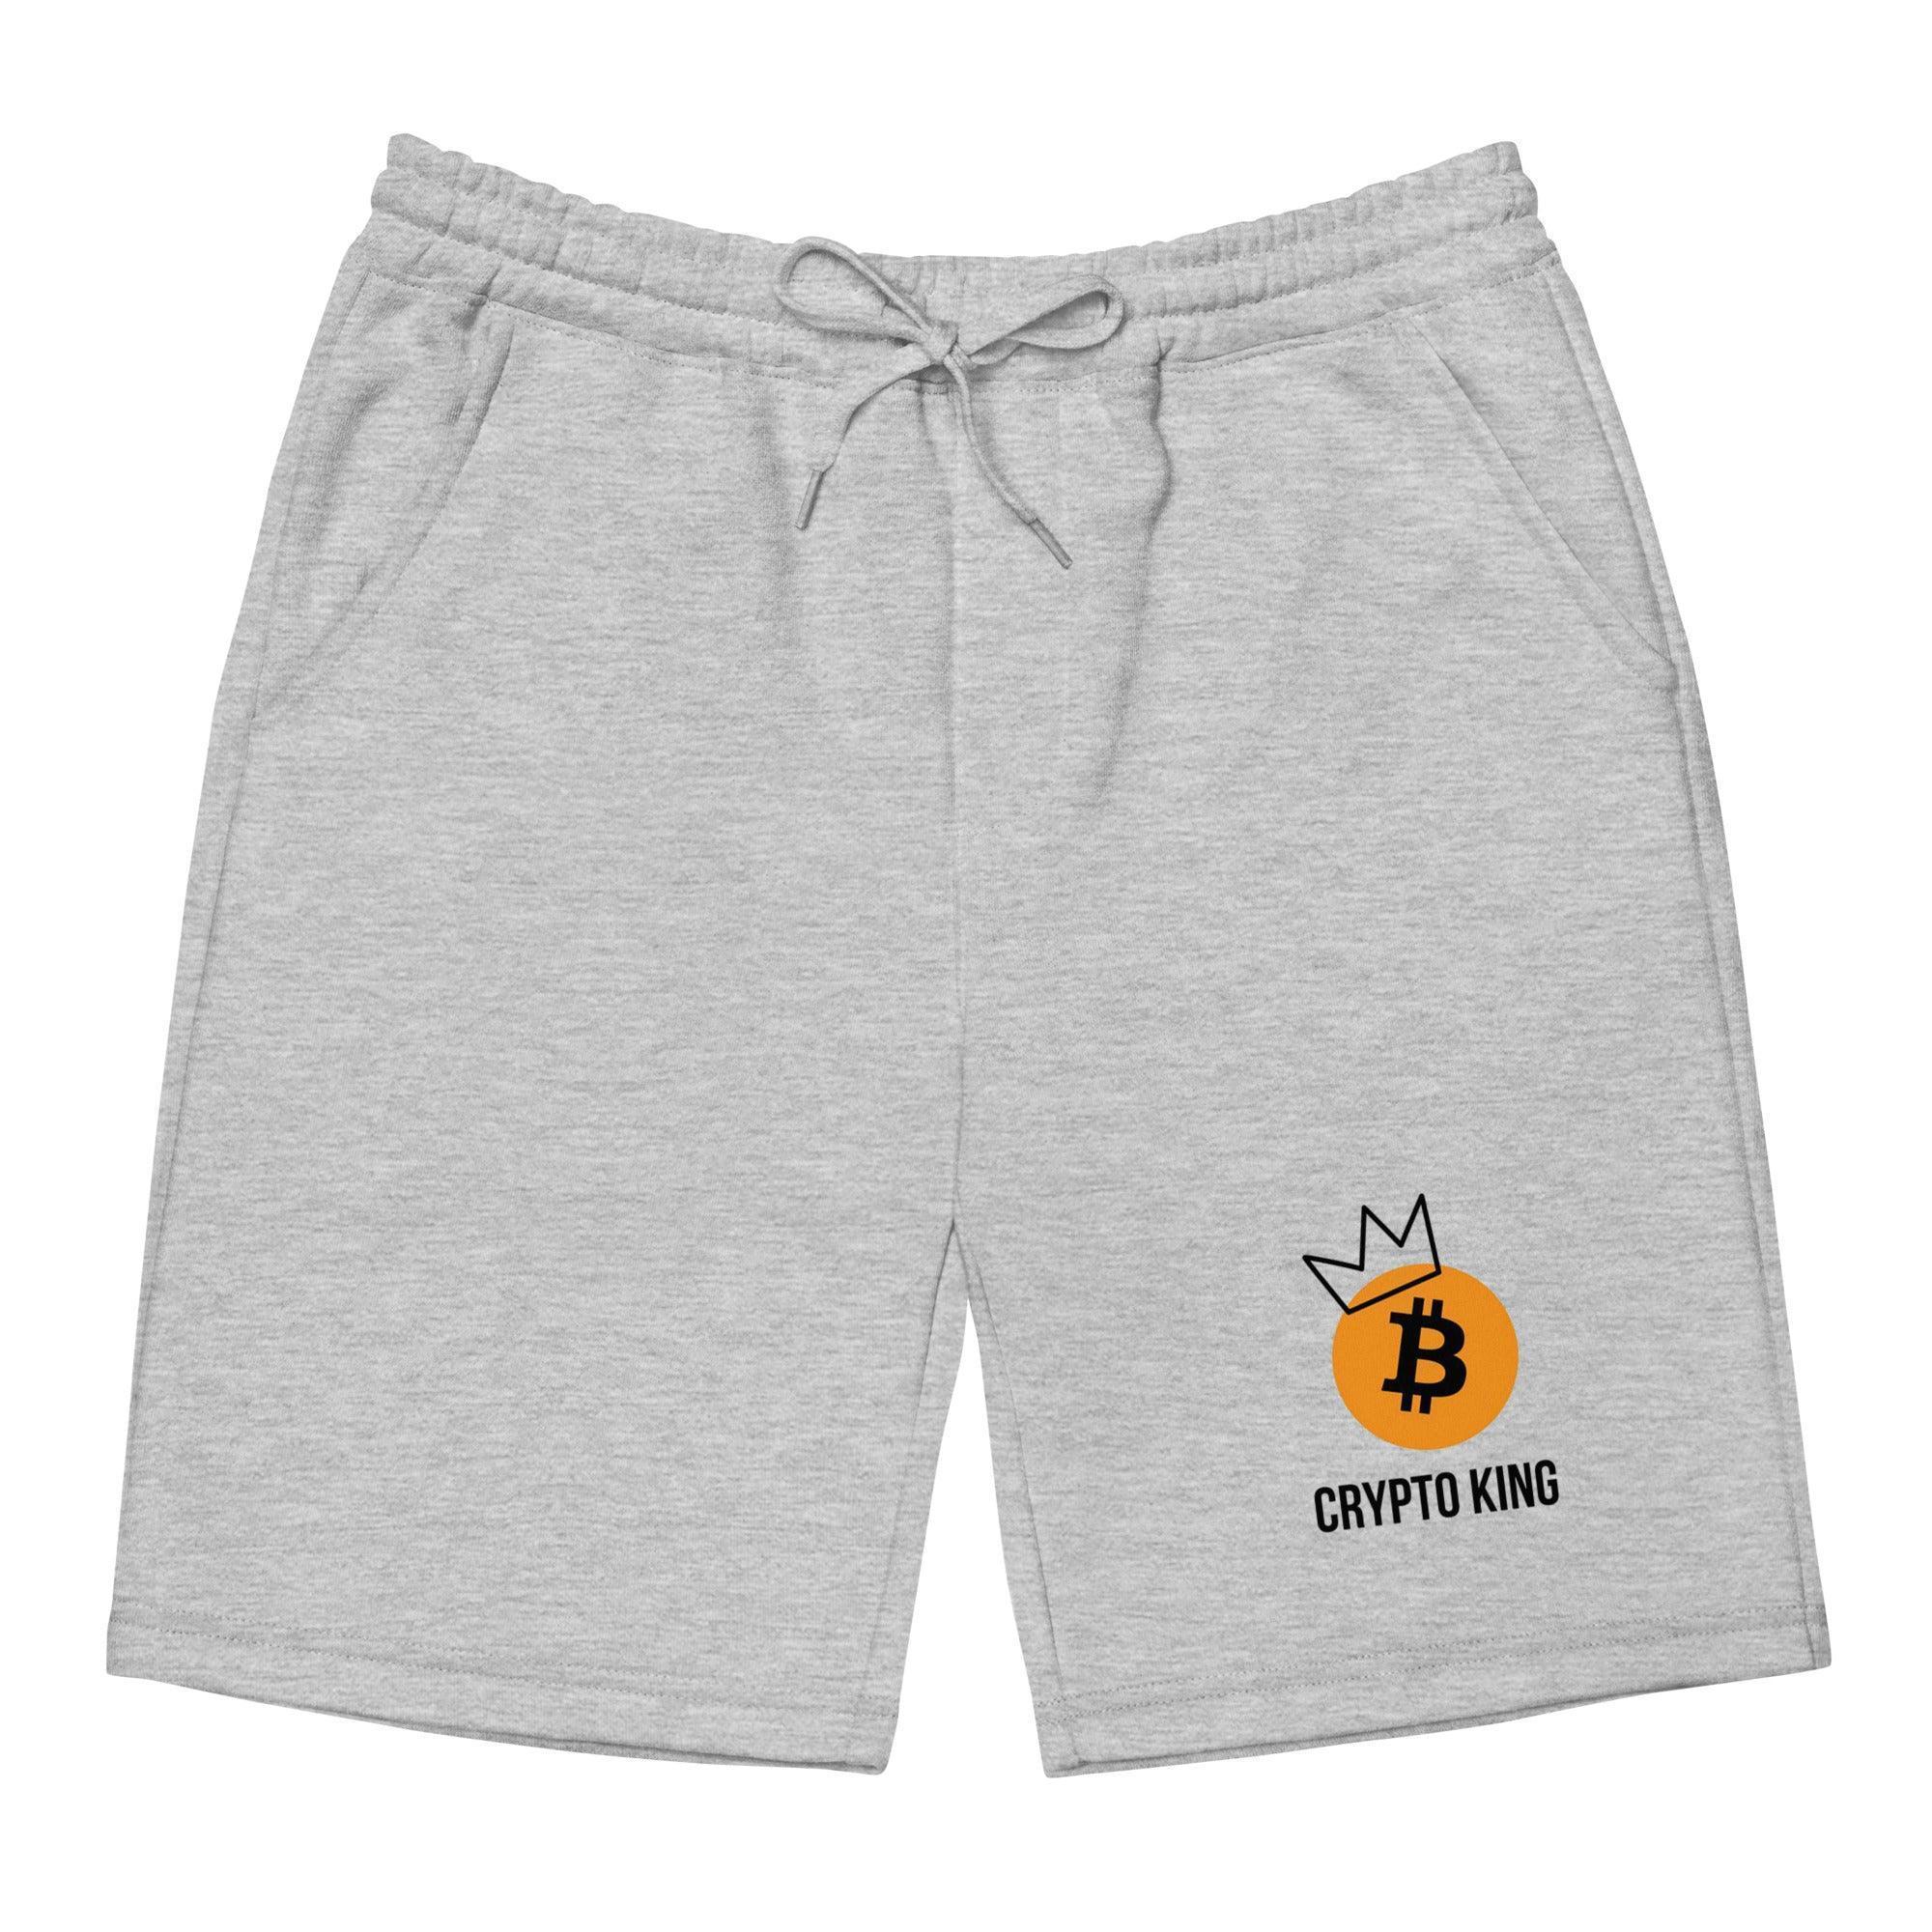 Bitcoin Crypto King Fleece Shorts - InvestmenTees